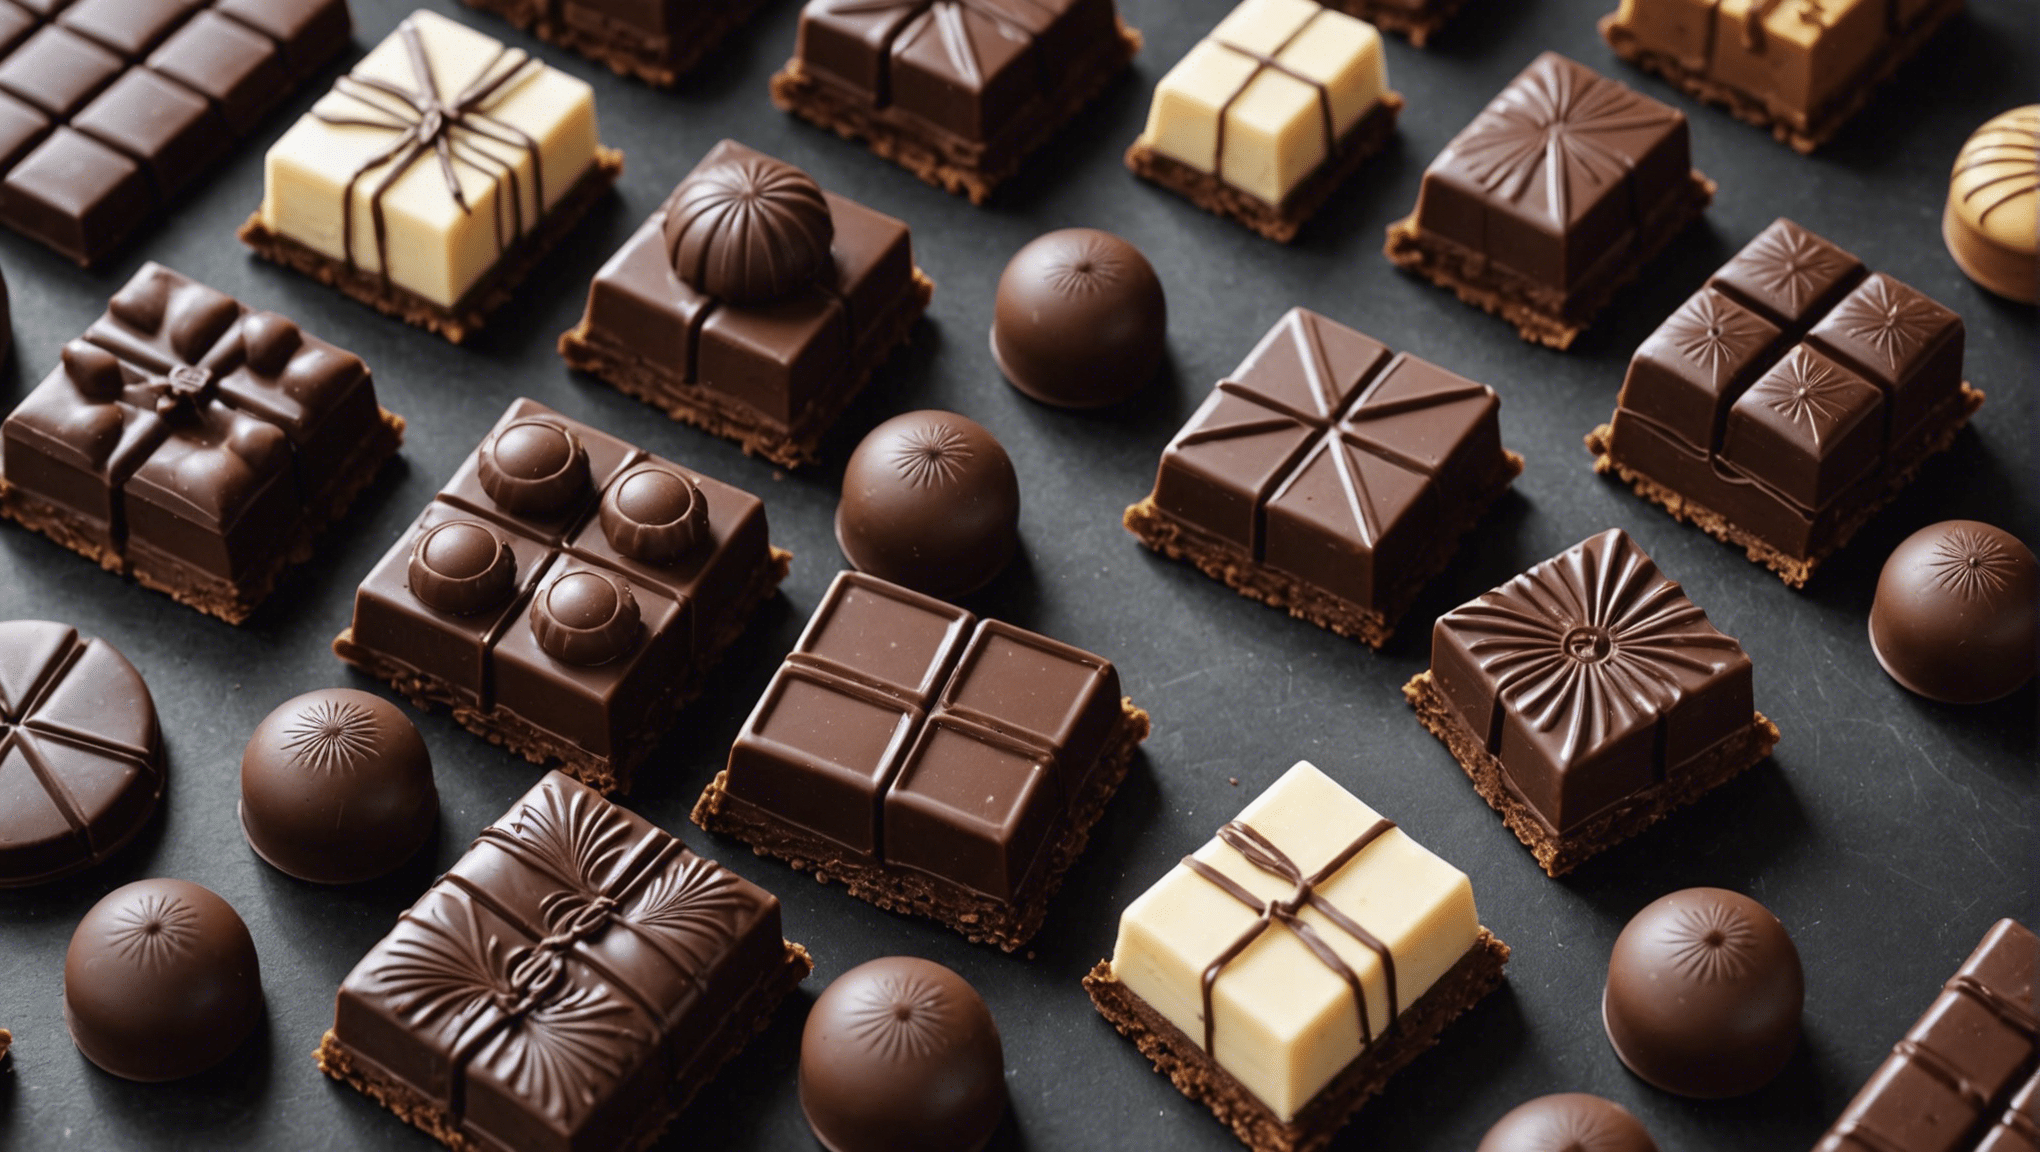 découvrez comment savourer les délices chocolatés avec nos astuces et recettes gourmandes pour faire fondre de plaisir vos papilles.